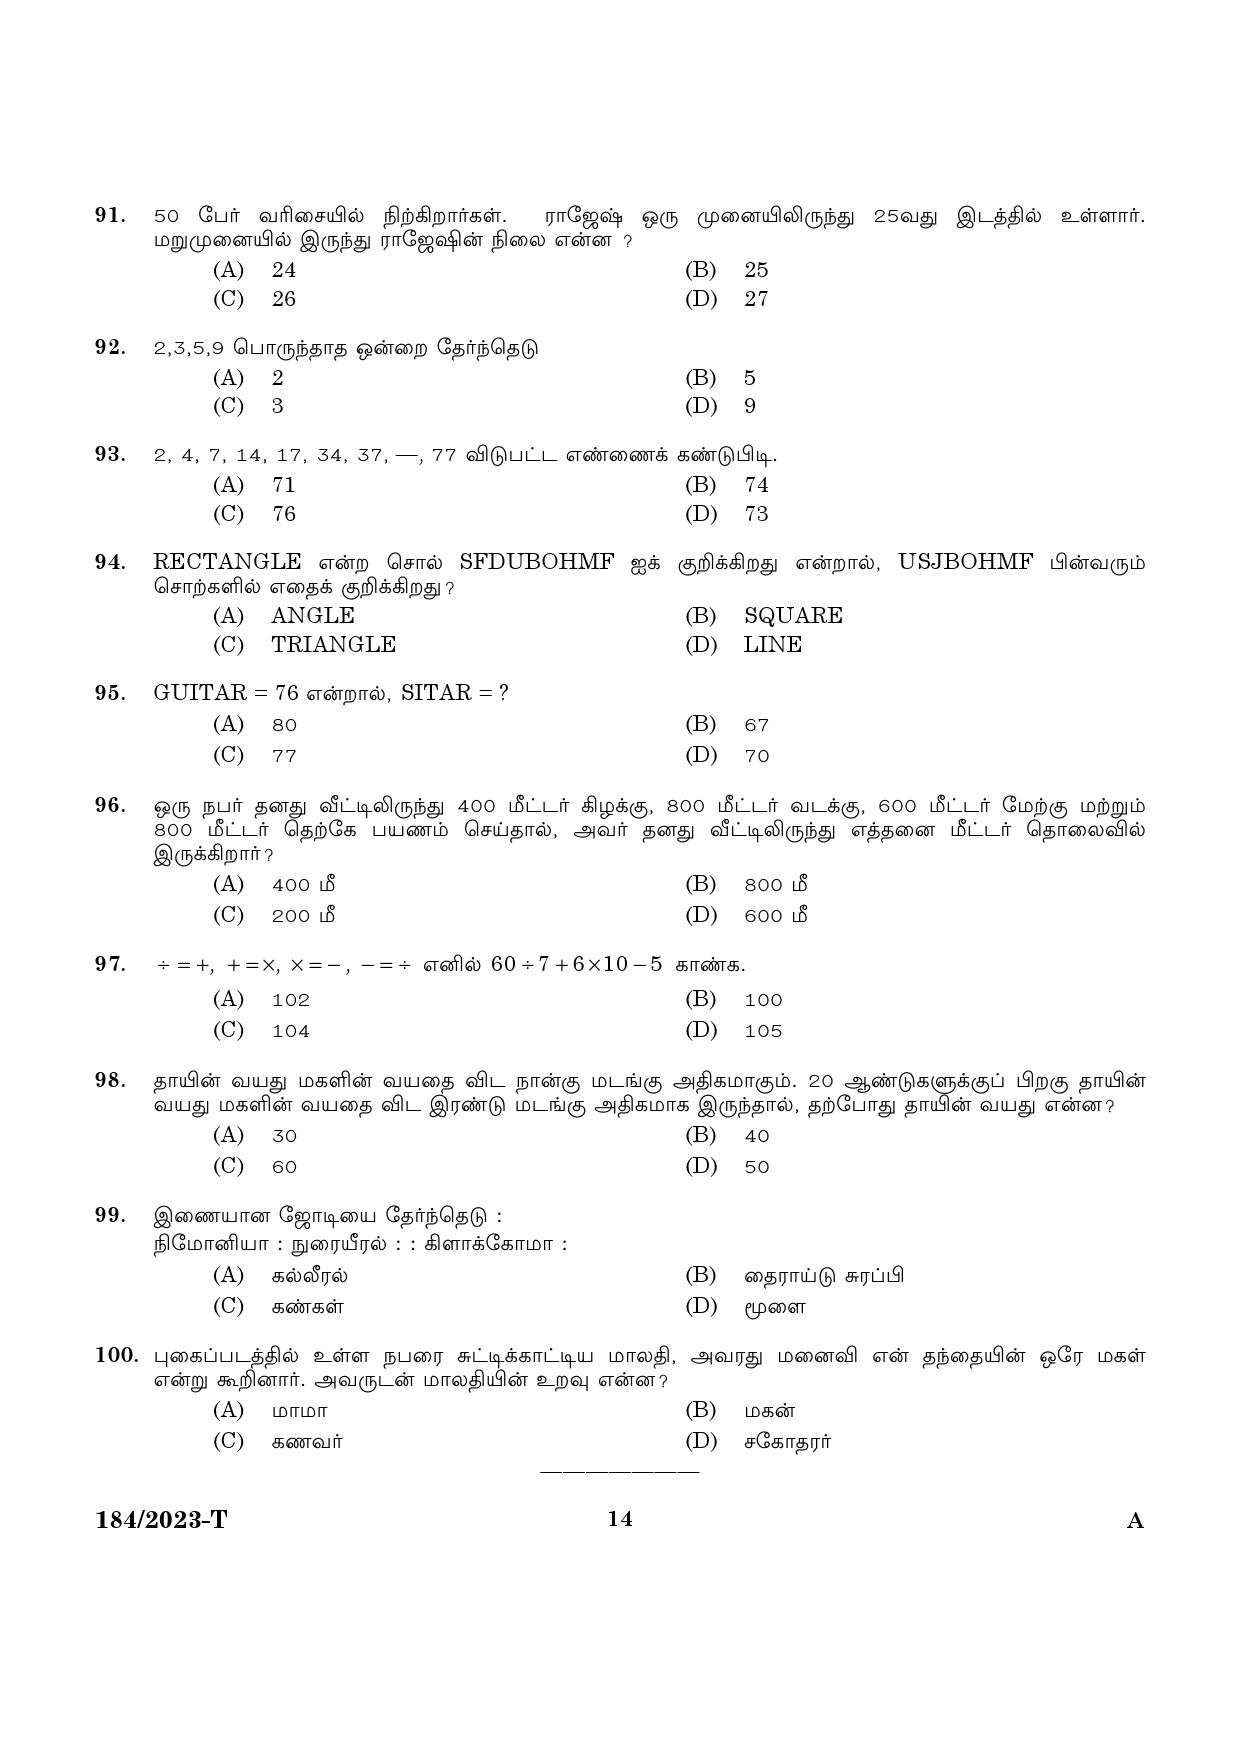 KPSC LGS Tamil Exam 2023 Code 1842023 T 12